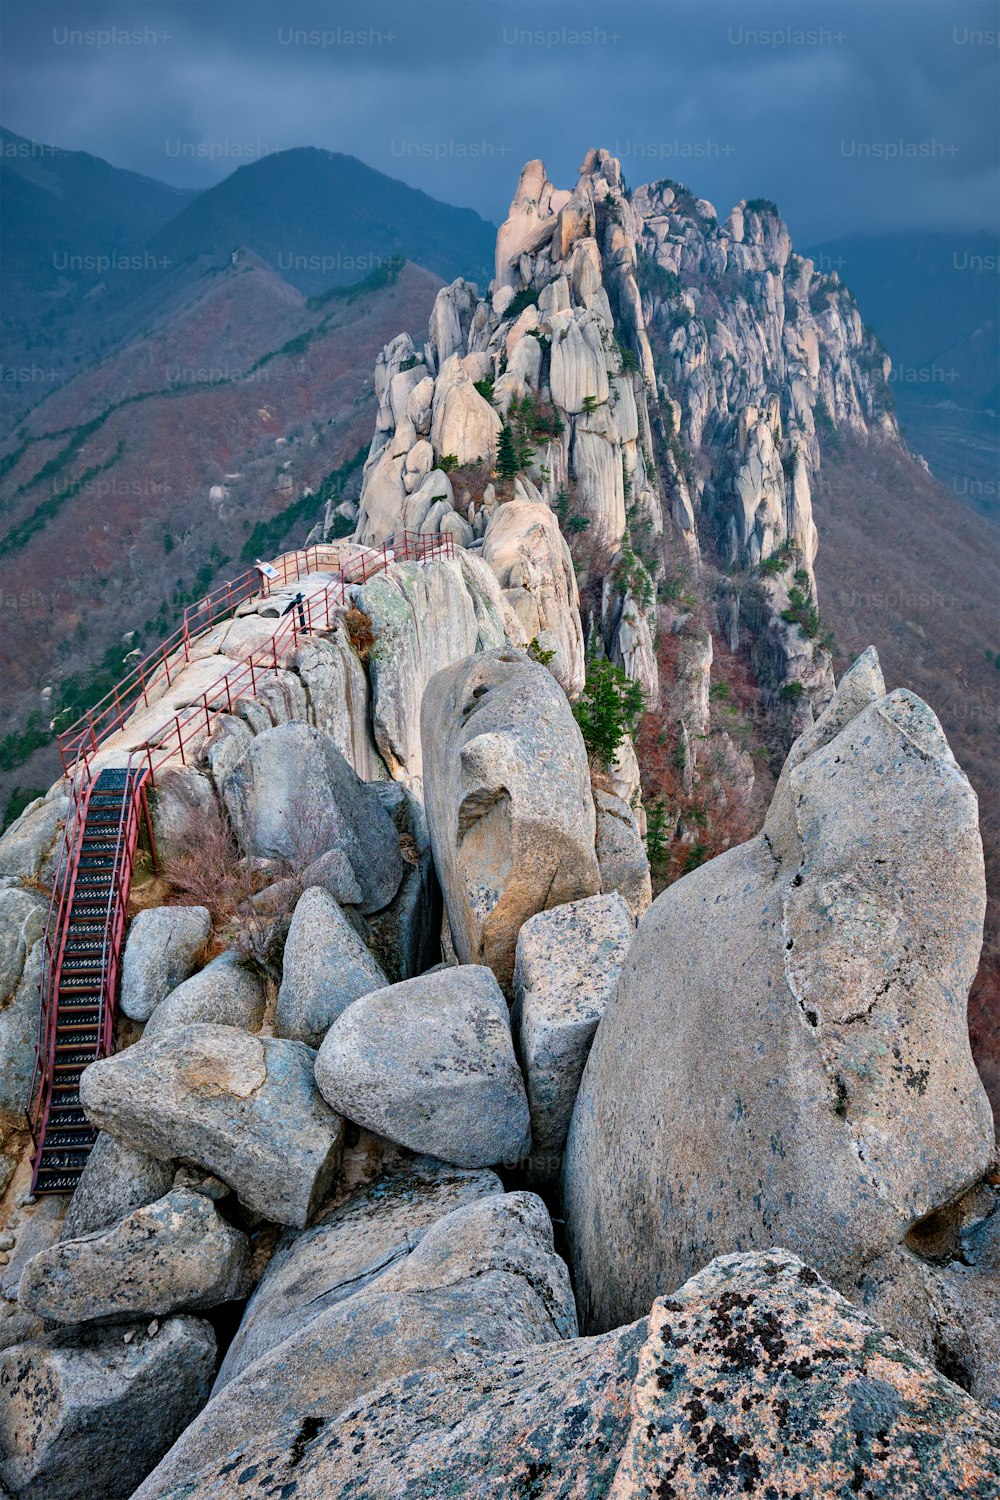 Vista de pedras e formações rochosas do pico rochoso de Ulsanbawi em tempo tempestuoso com nuvens. Parque Nacional de Seoraksan, Coreia do Sul